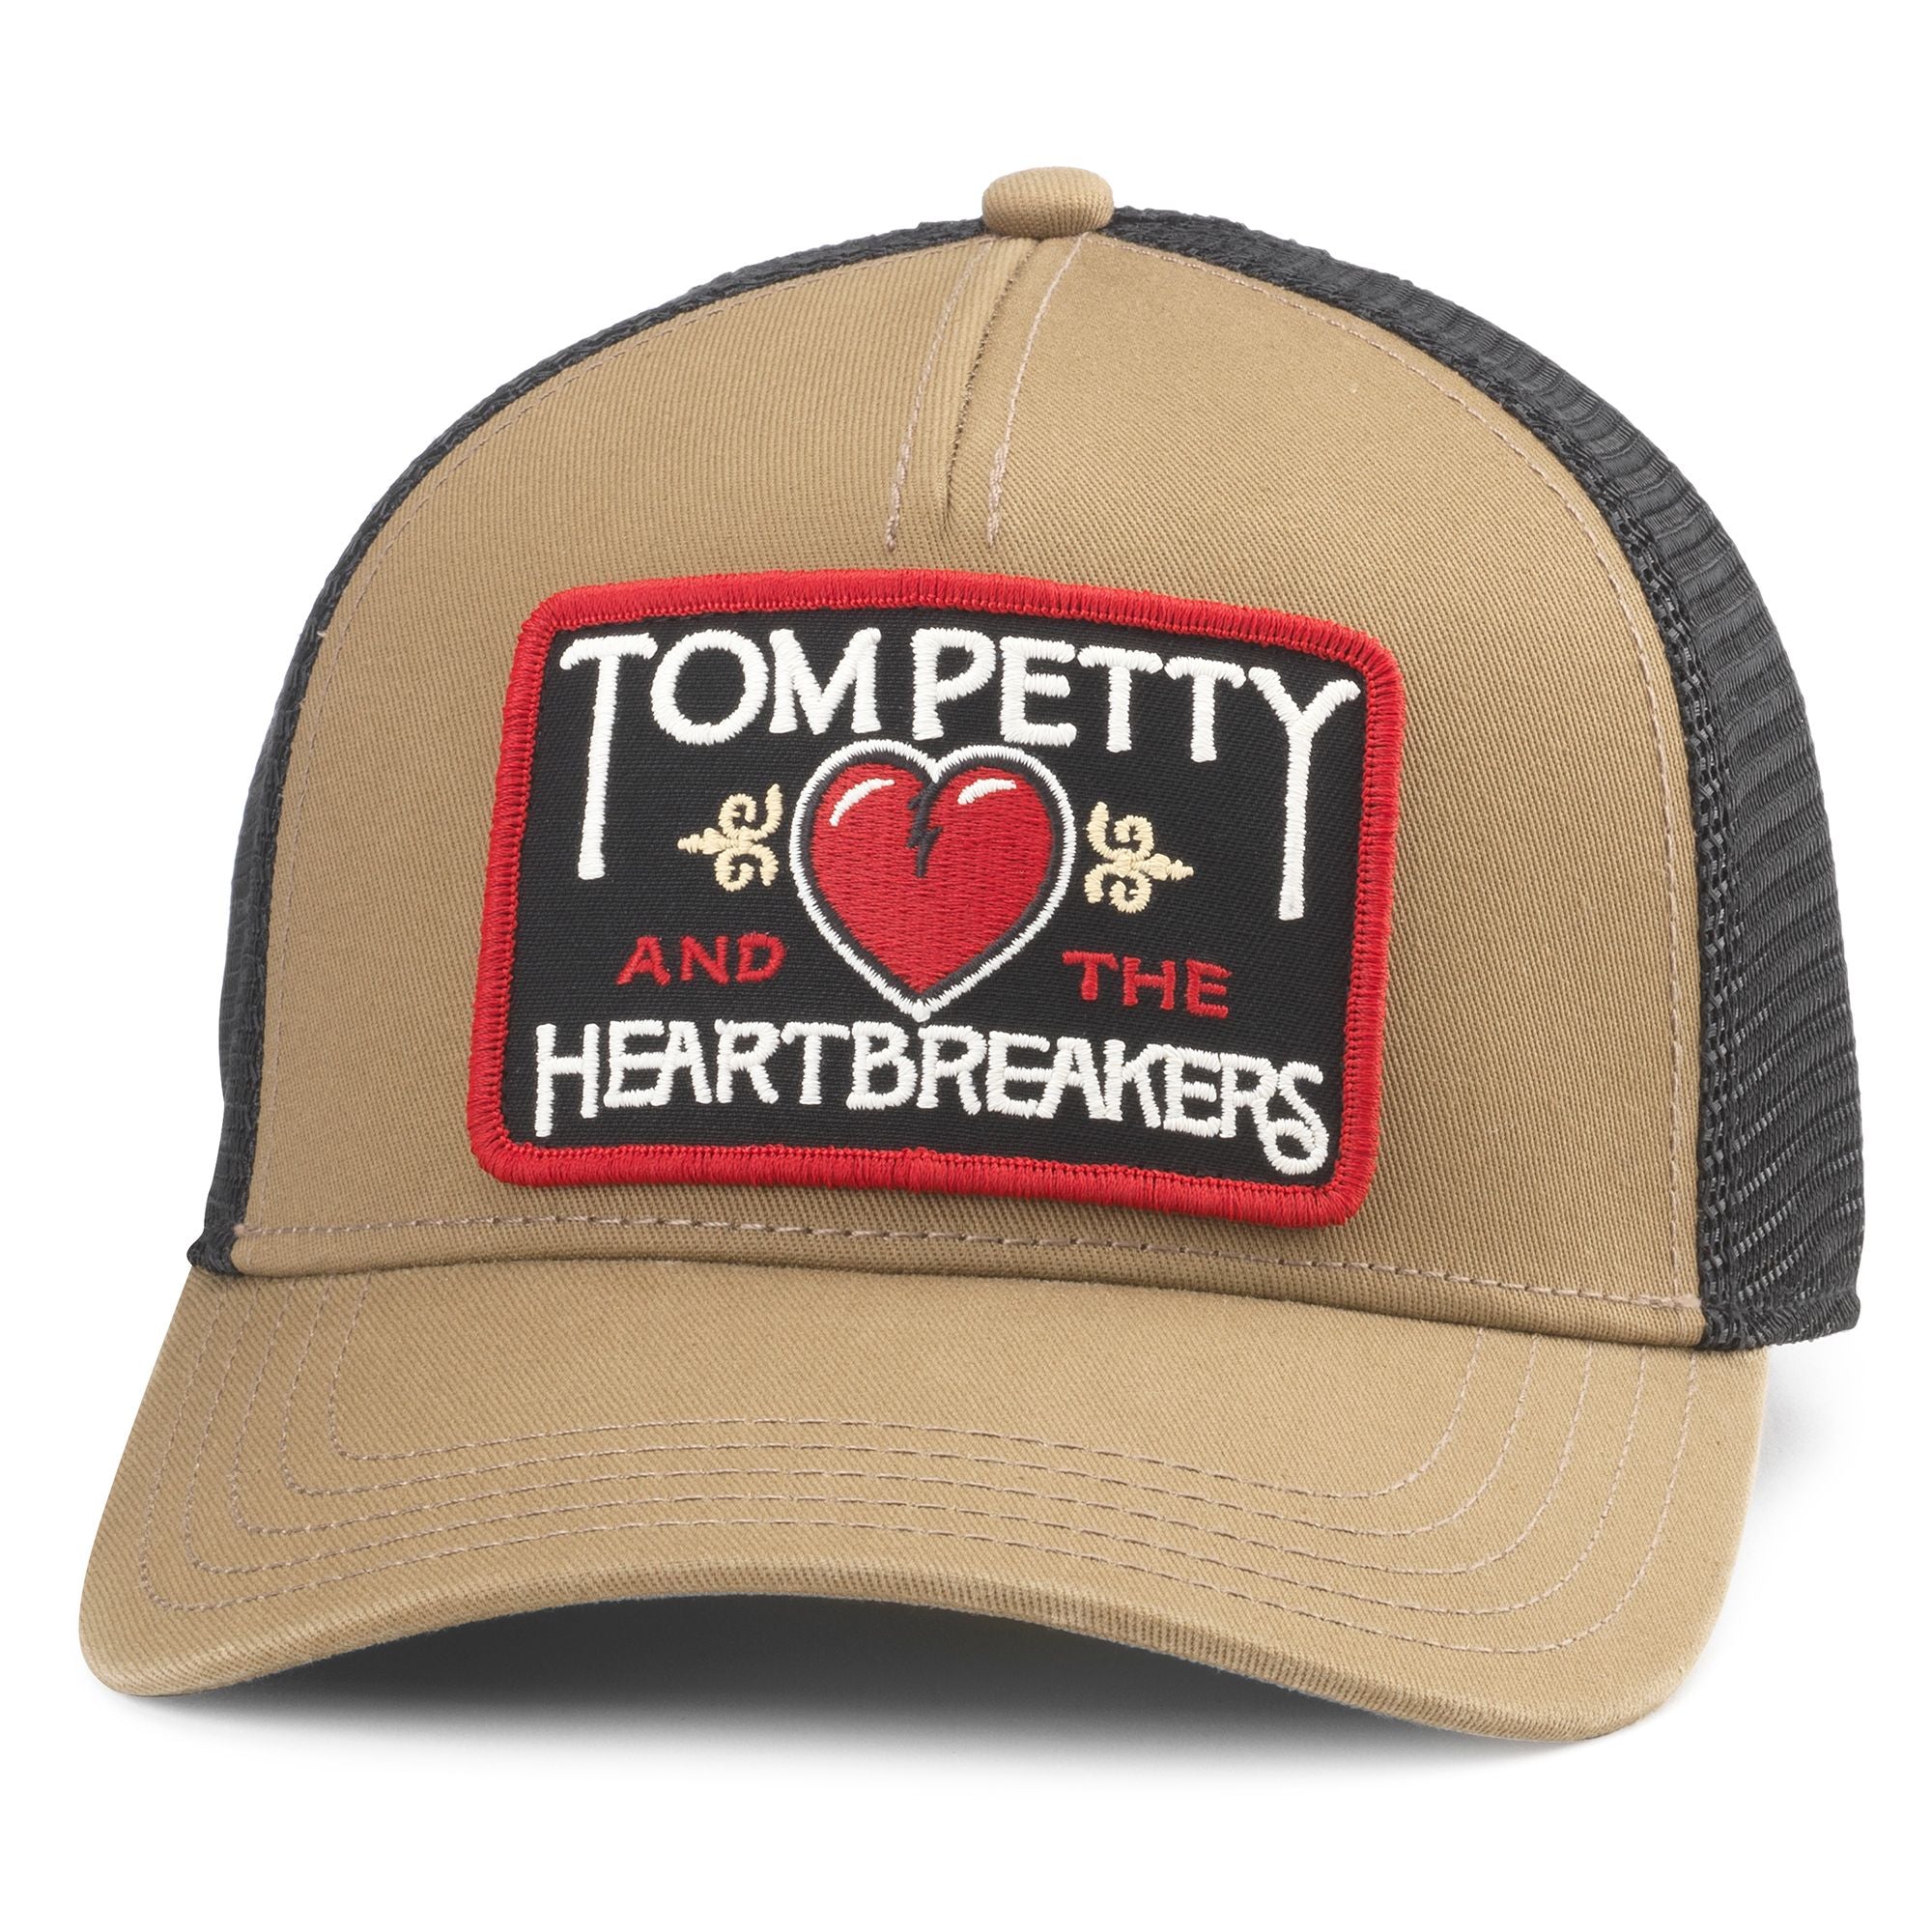 Valin Trucker Hat - Tom Petty